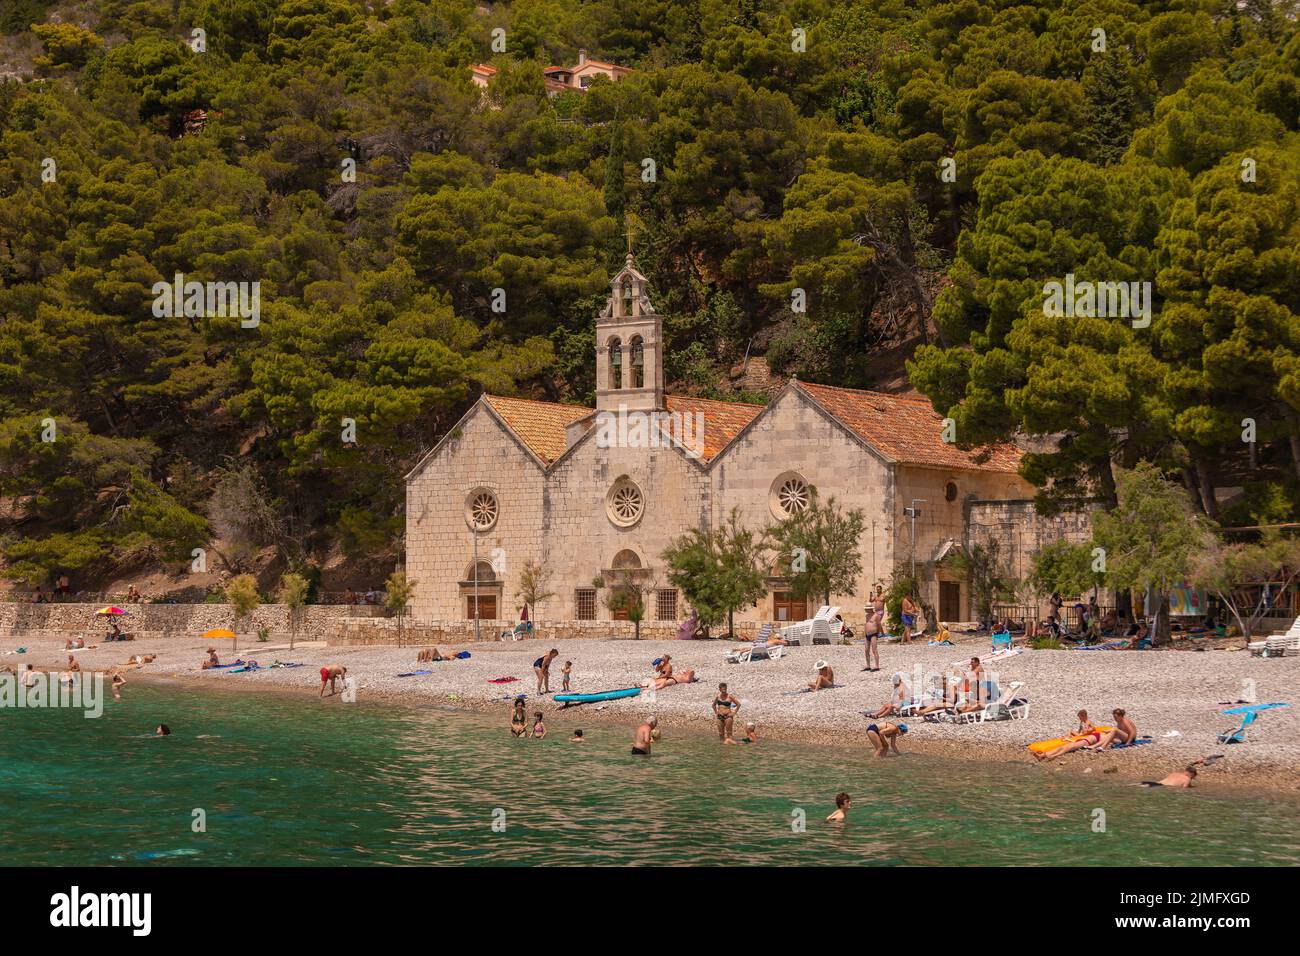 KOMIZA, VIS, CROACIA, EUROPA - La gente disfruta de la playa en la ciudad costera de Komiza, en la isla de Vis, en el mar Adriático. Foto de stock